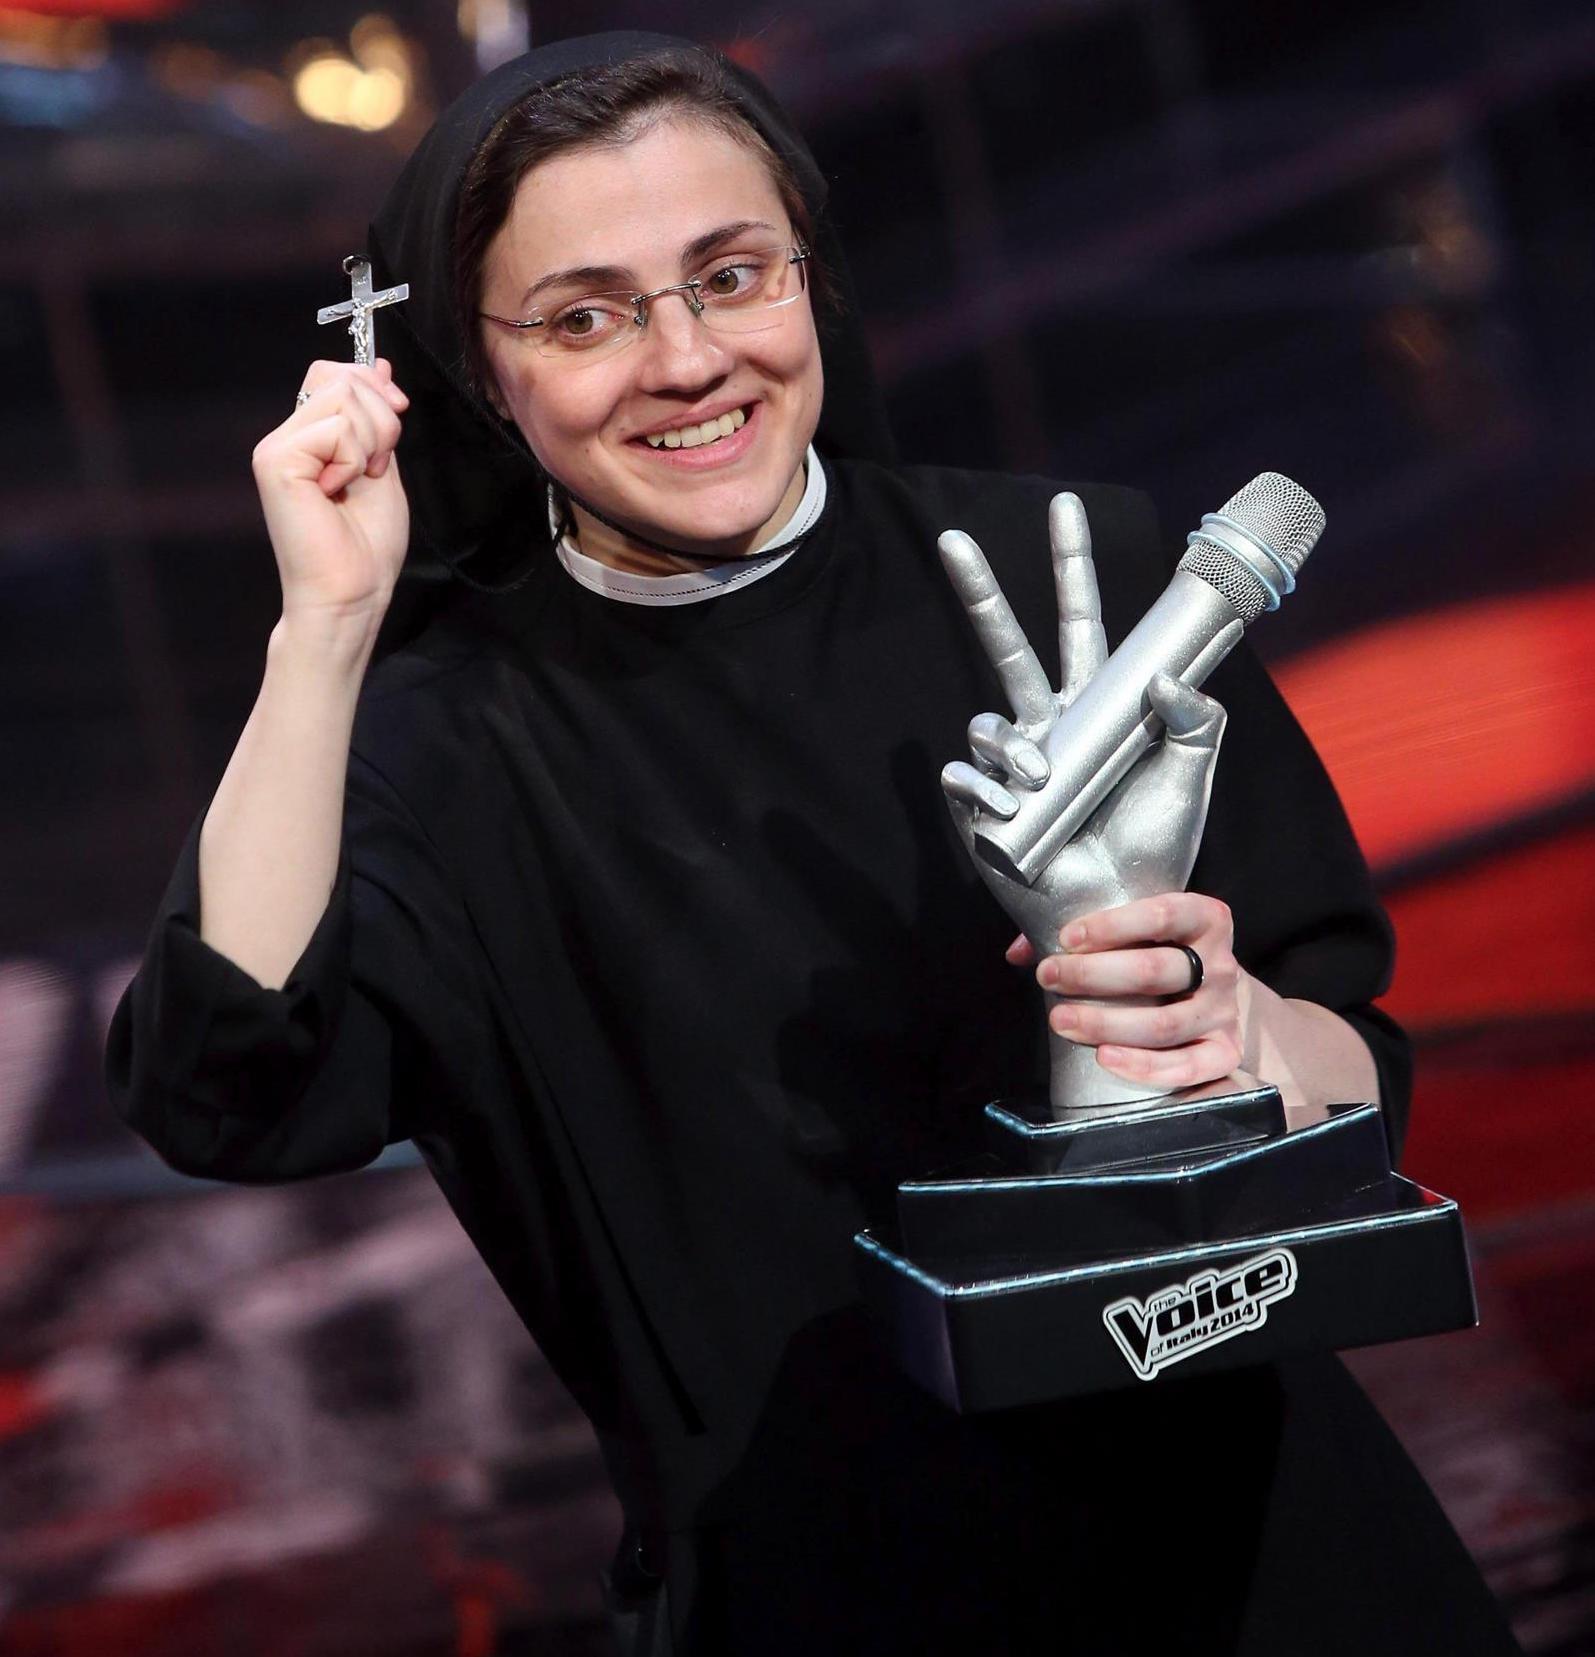 La monja que ganó “La Voz” en Italia colgó los hábitos y vive en España